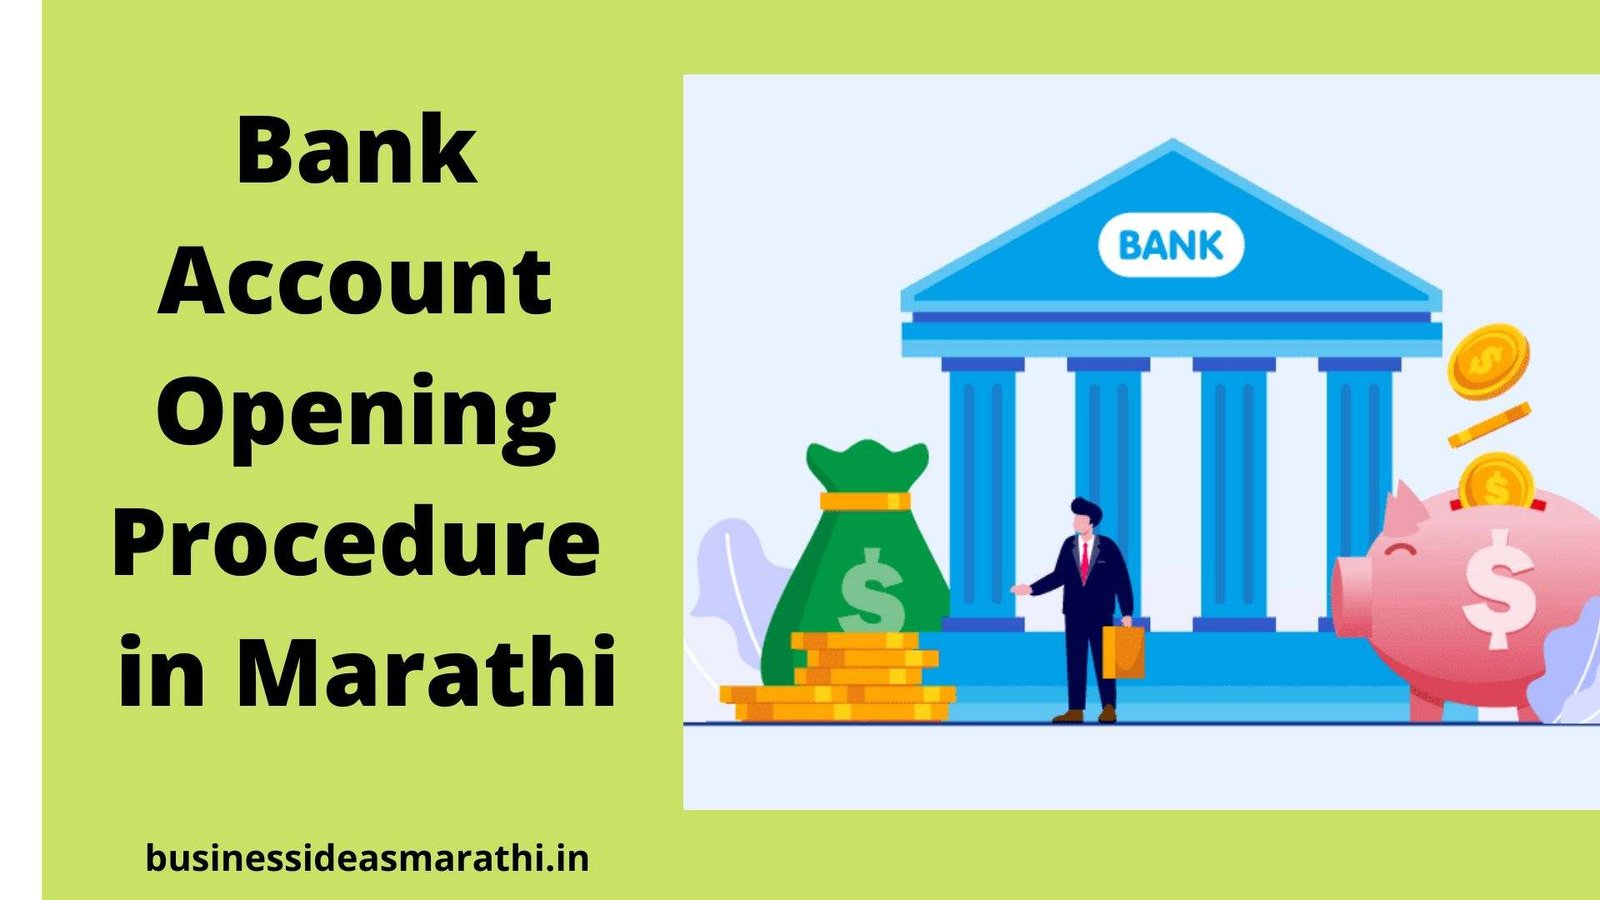 Bank Account Opening Procedure in Marathi